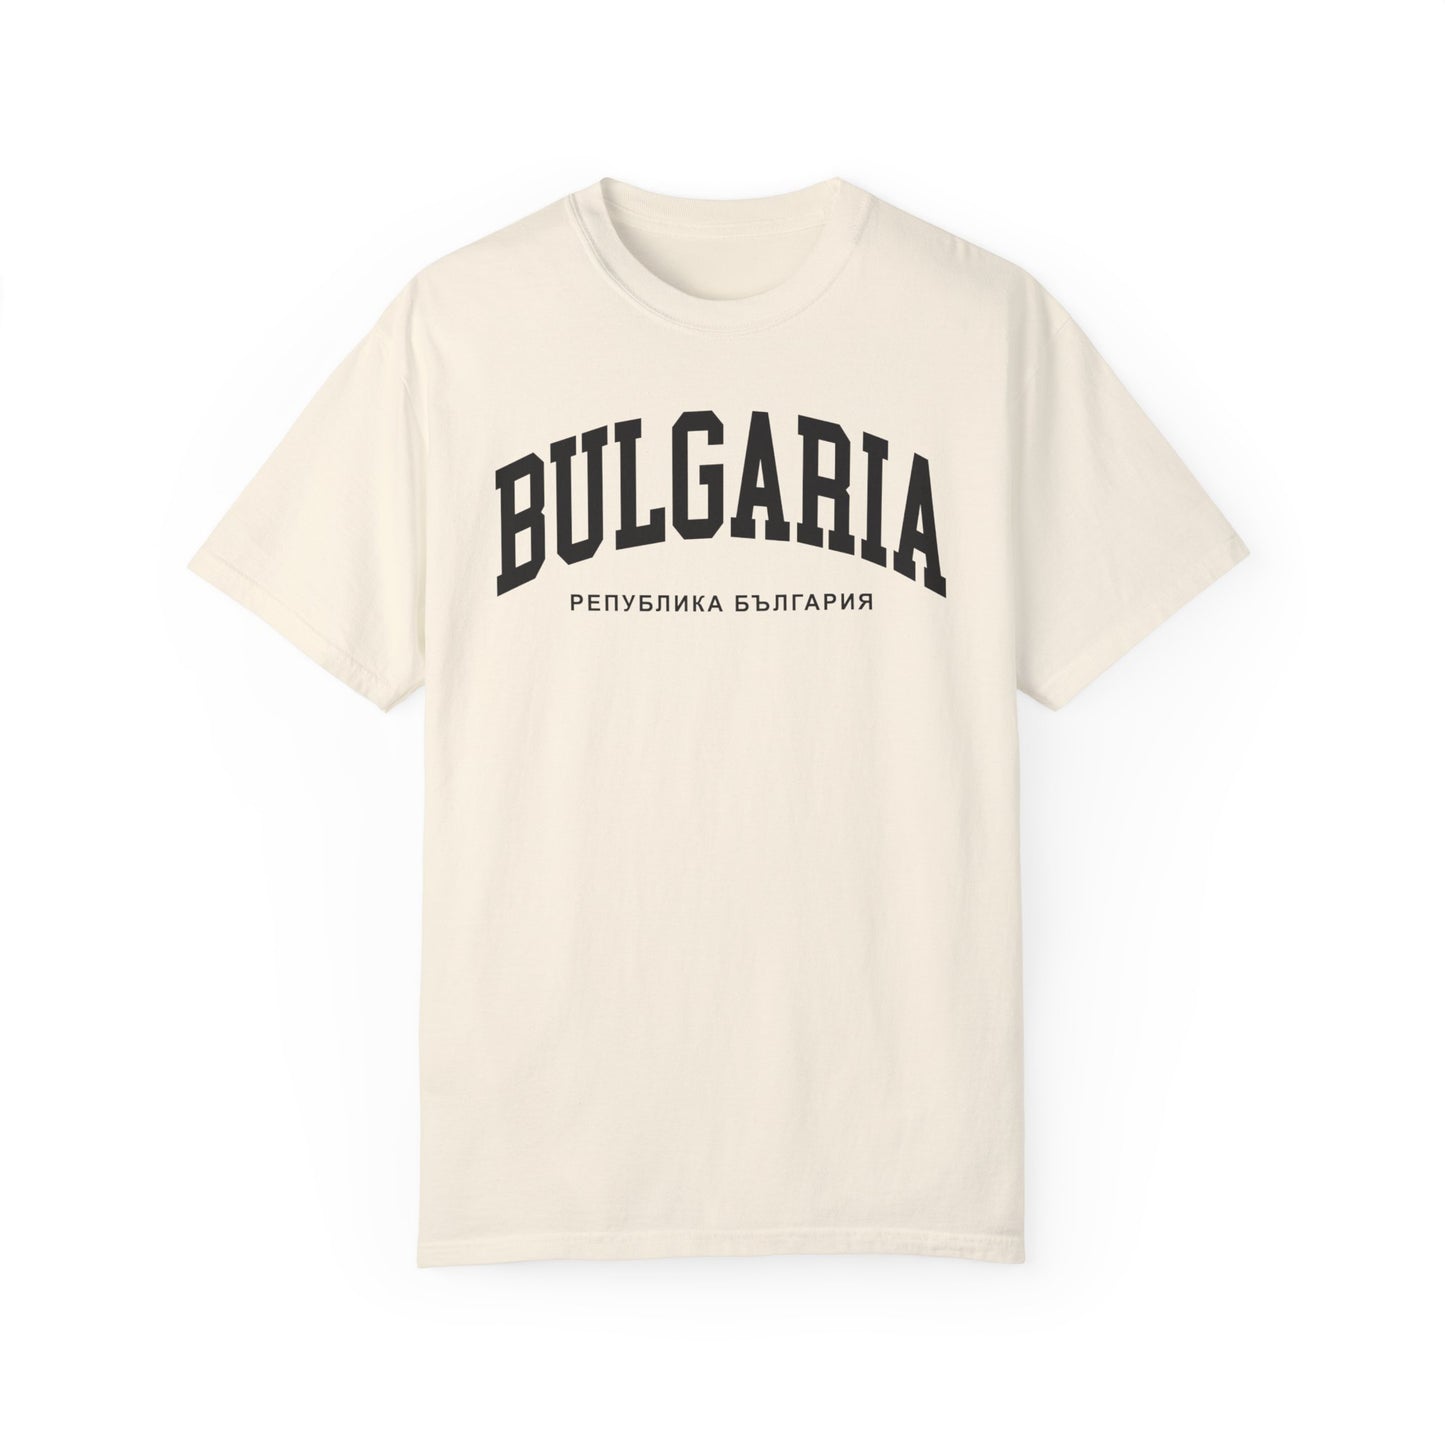 Bulgaria Comfort Colors® Tee